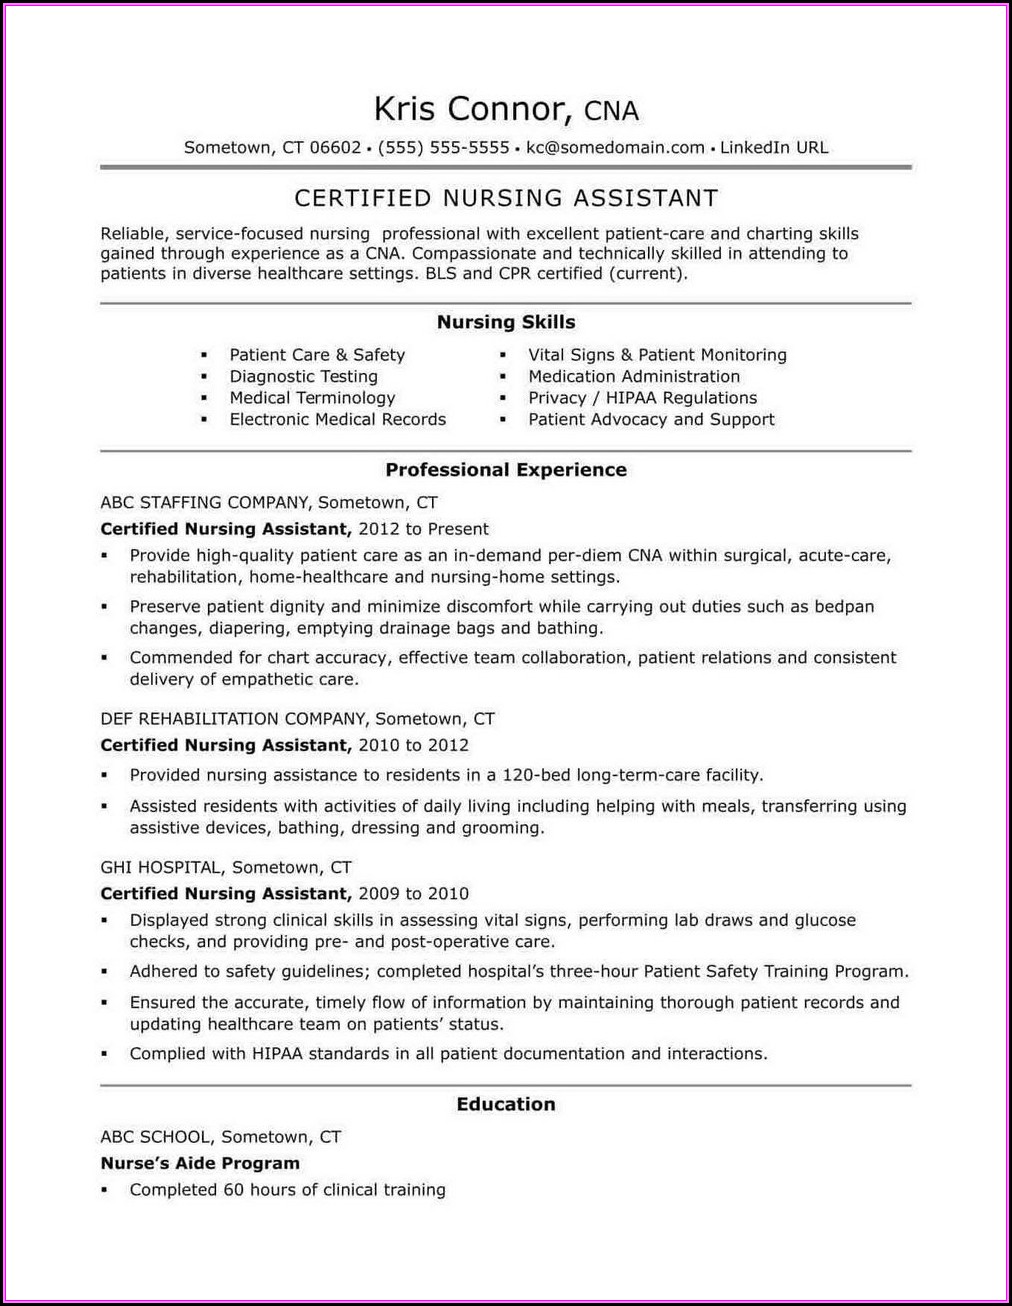 Resume Format For Medical Assistant